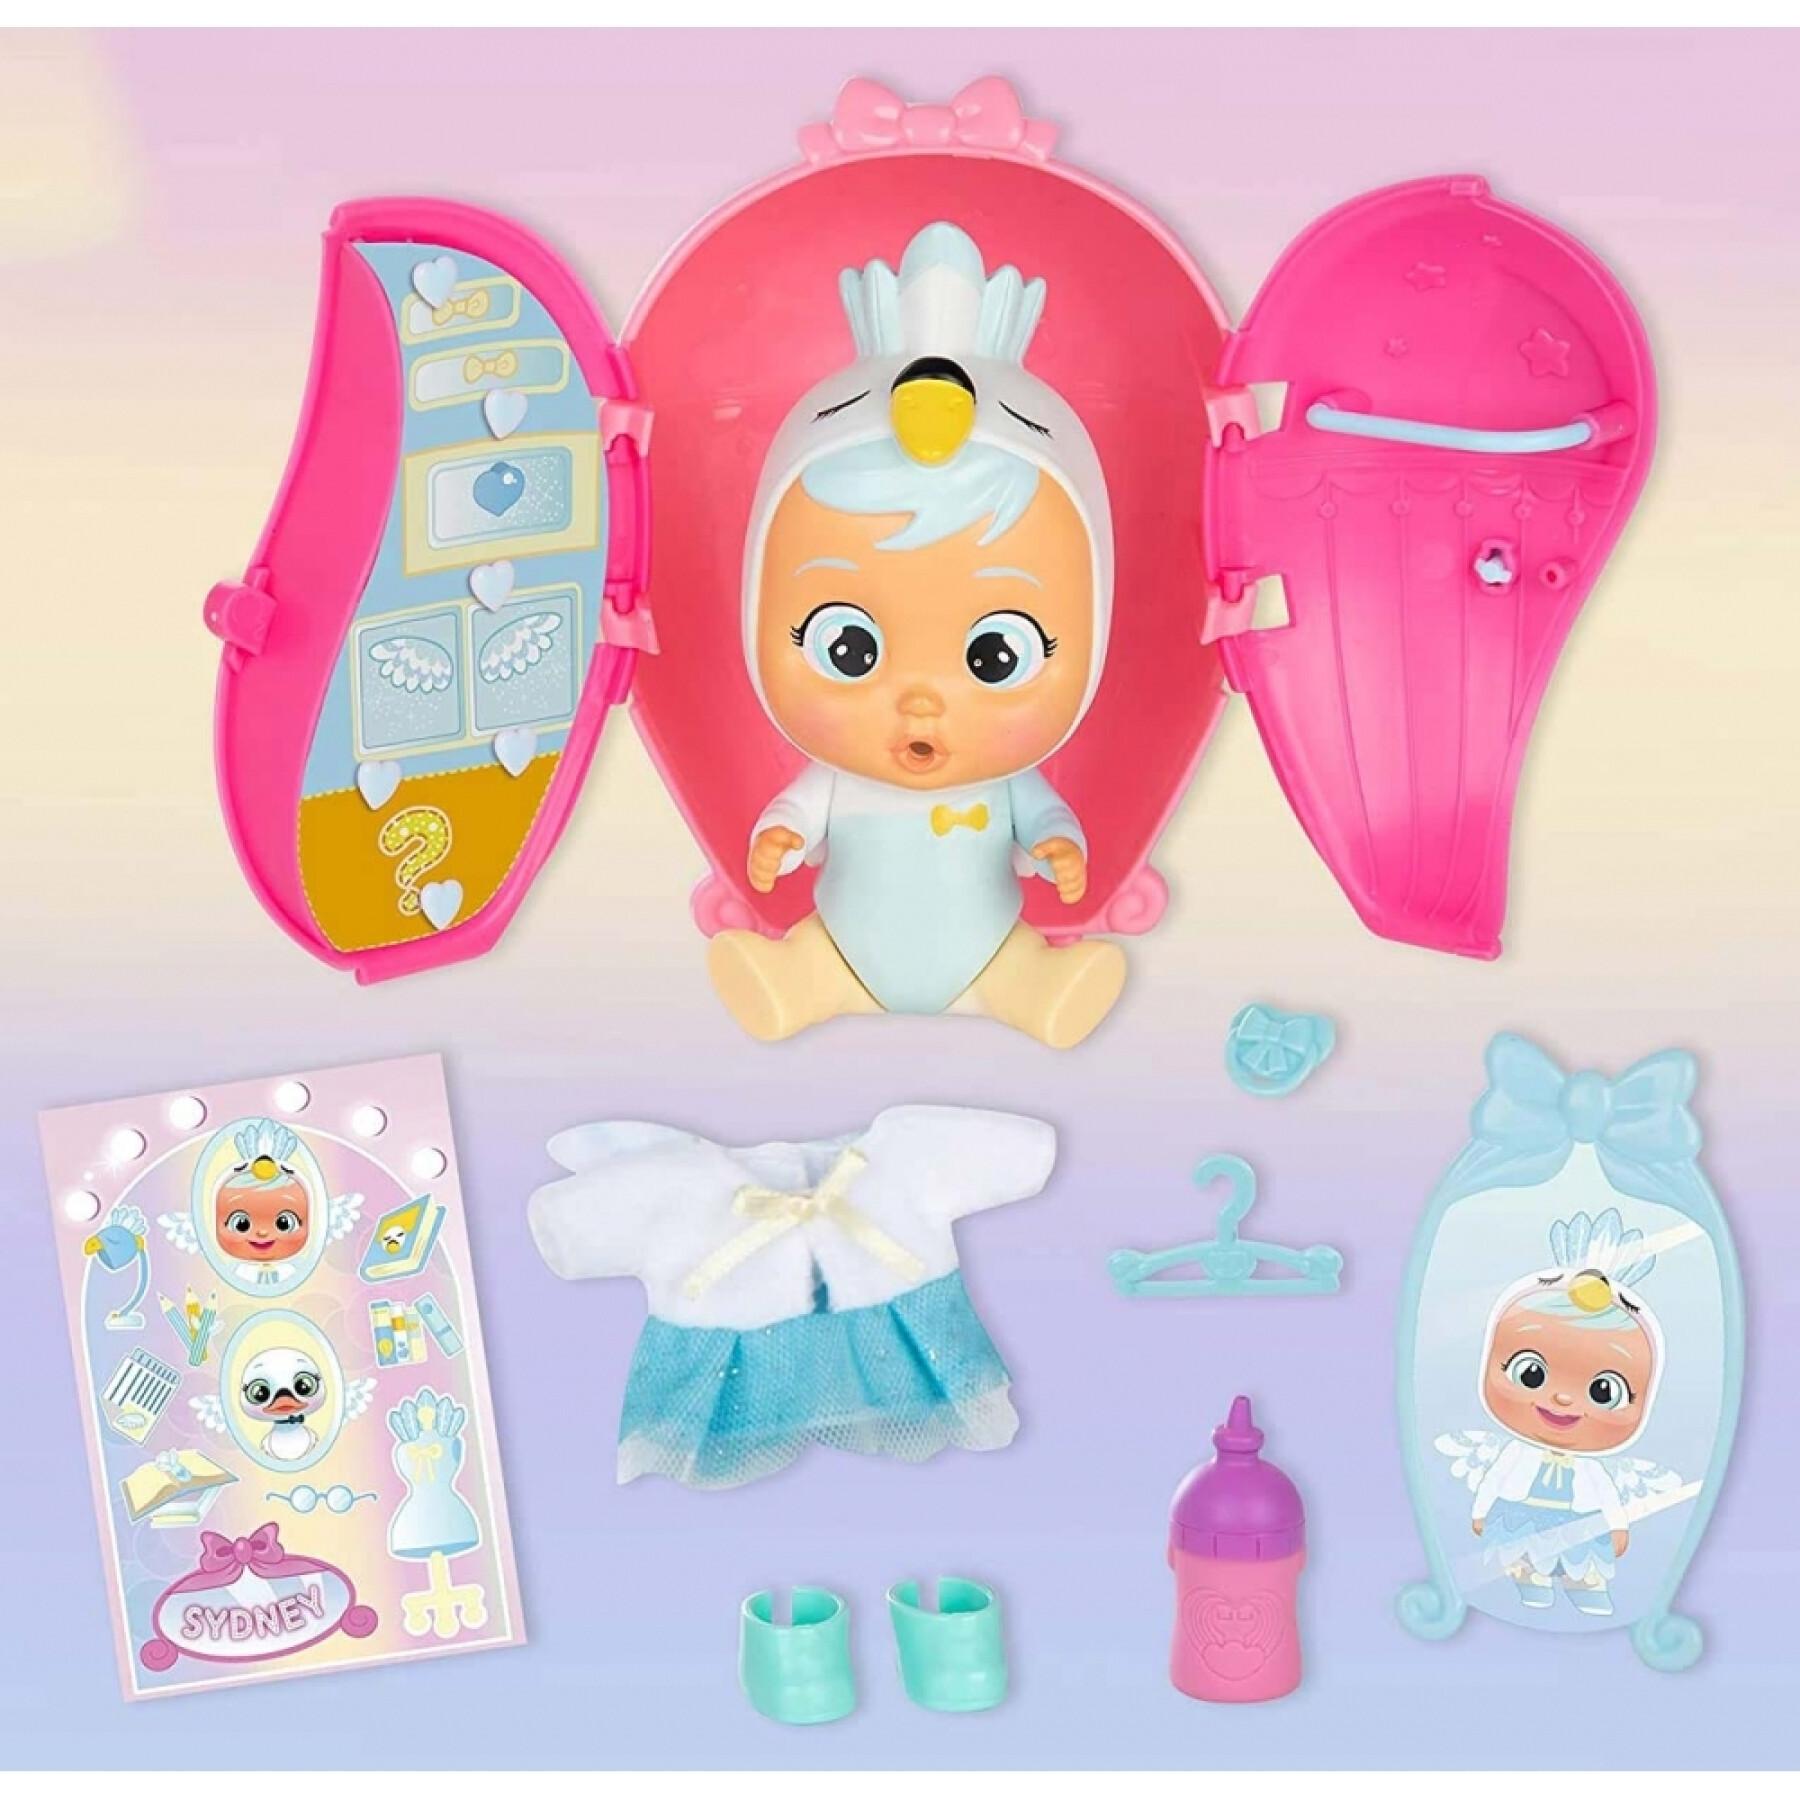 Boneca com guarda-roupa, vestuário e acessórios Bebés Llorones